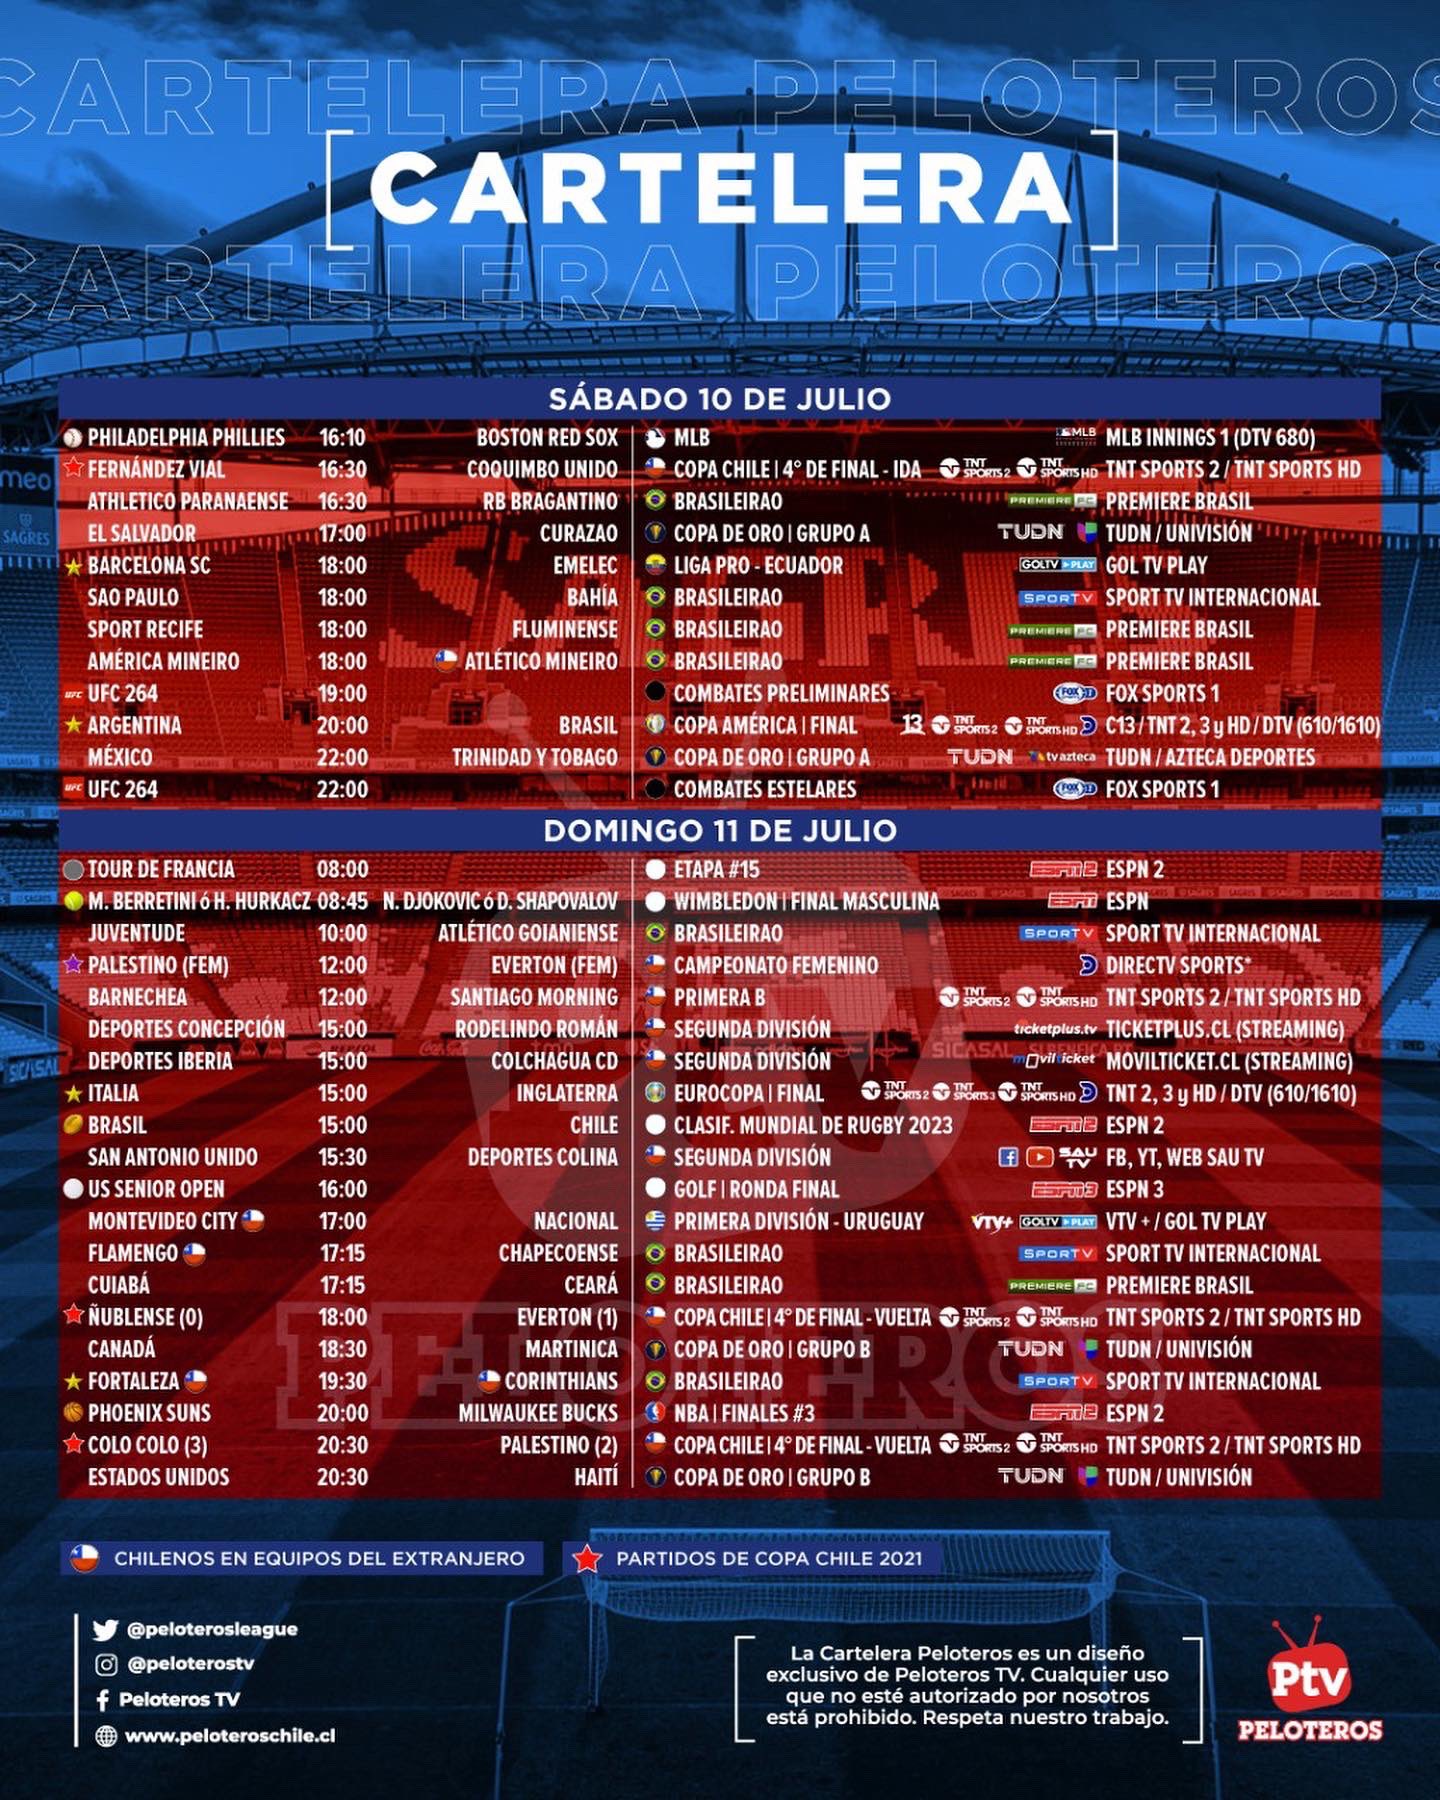 Calendário do Flamengo 2023 - ESPN (BR)